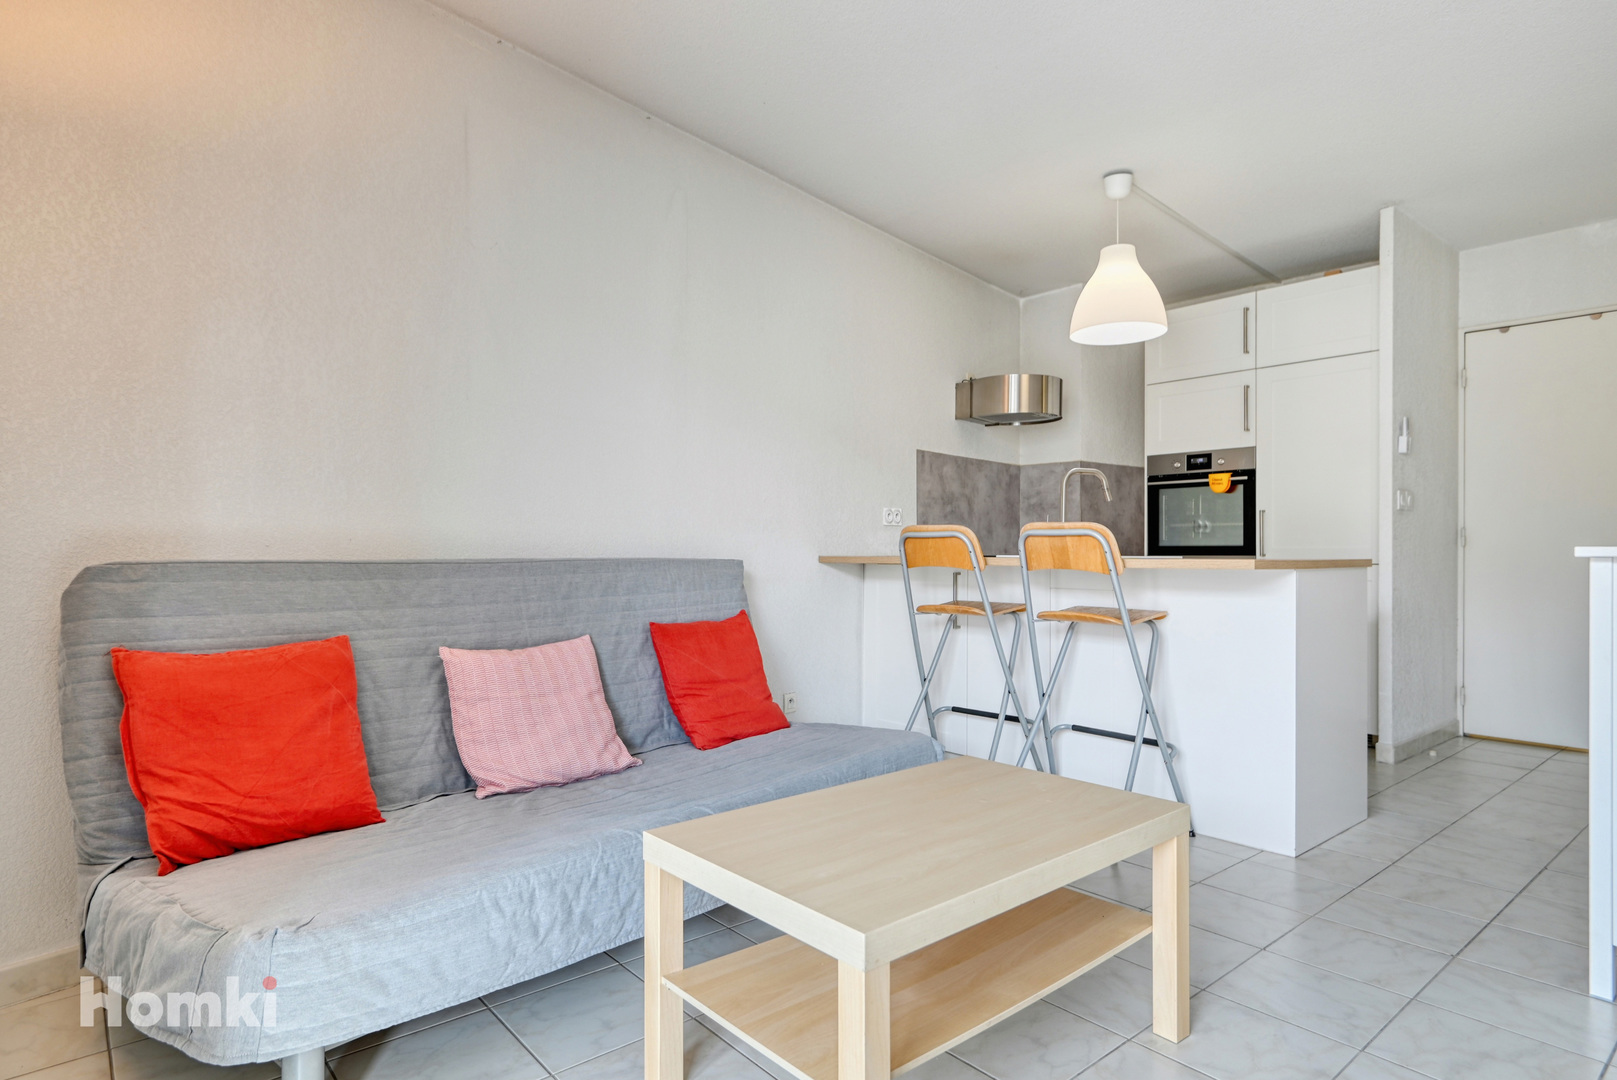 Homki - Vente Appartement  de 37.0 m² à Marseille 13005